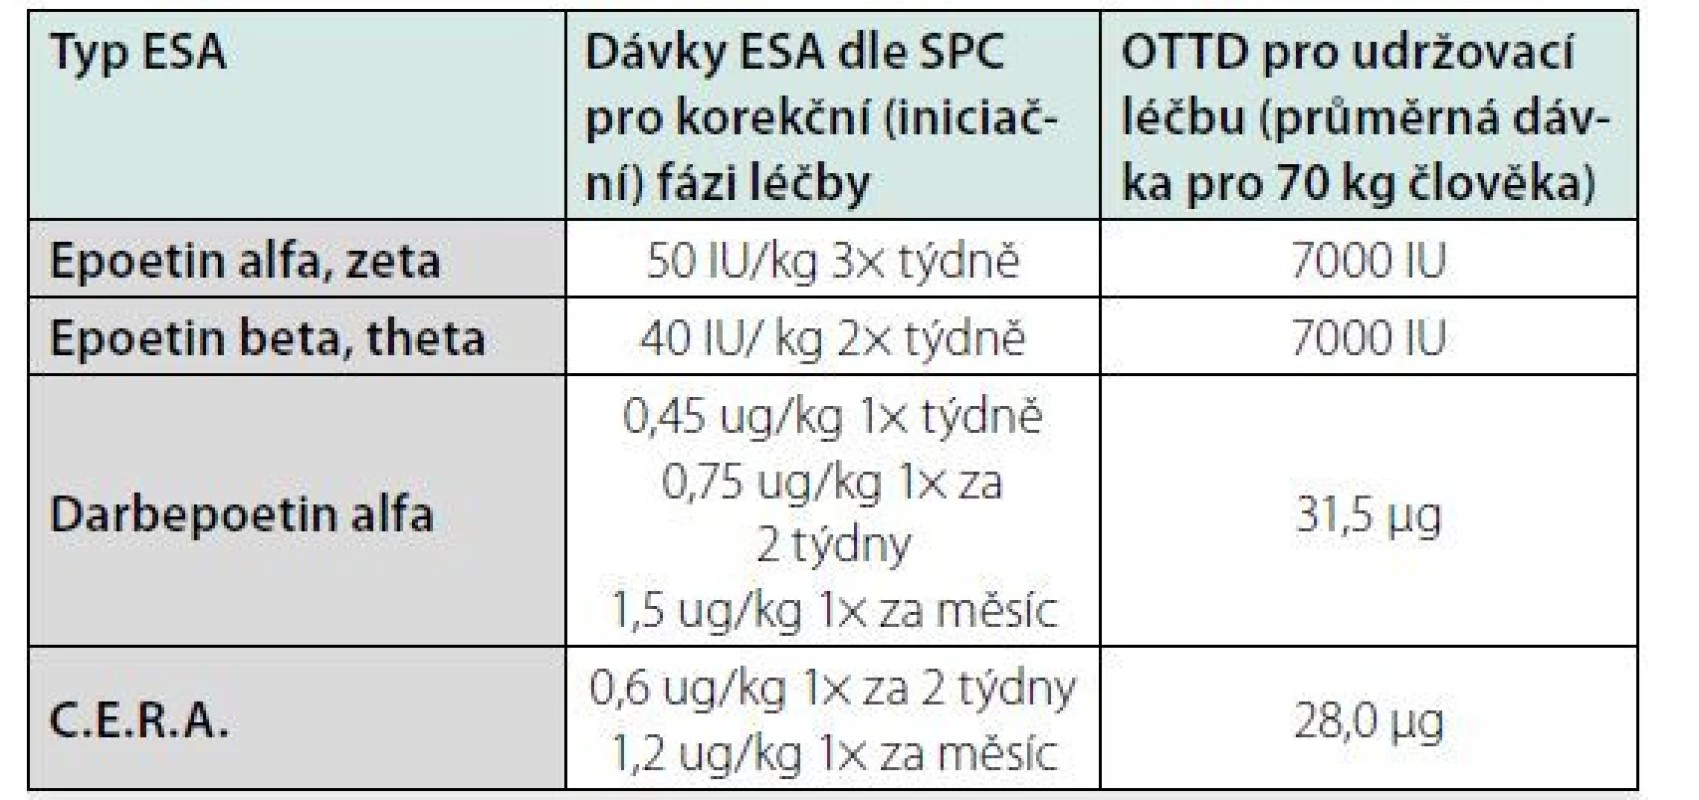 Doporučené iniciální dávky pro podávání erytropoézu stimulujících
léků (ESA)